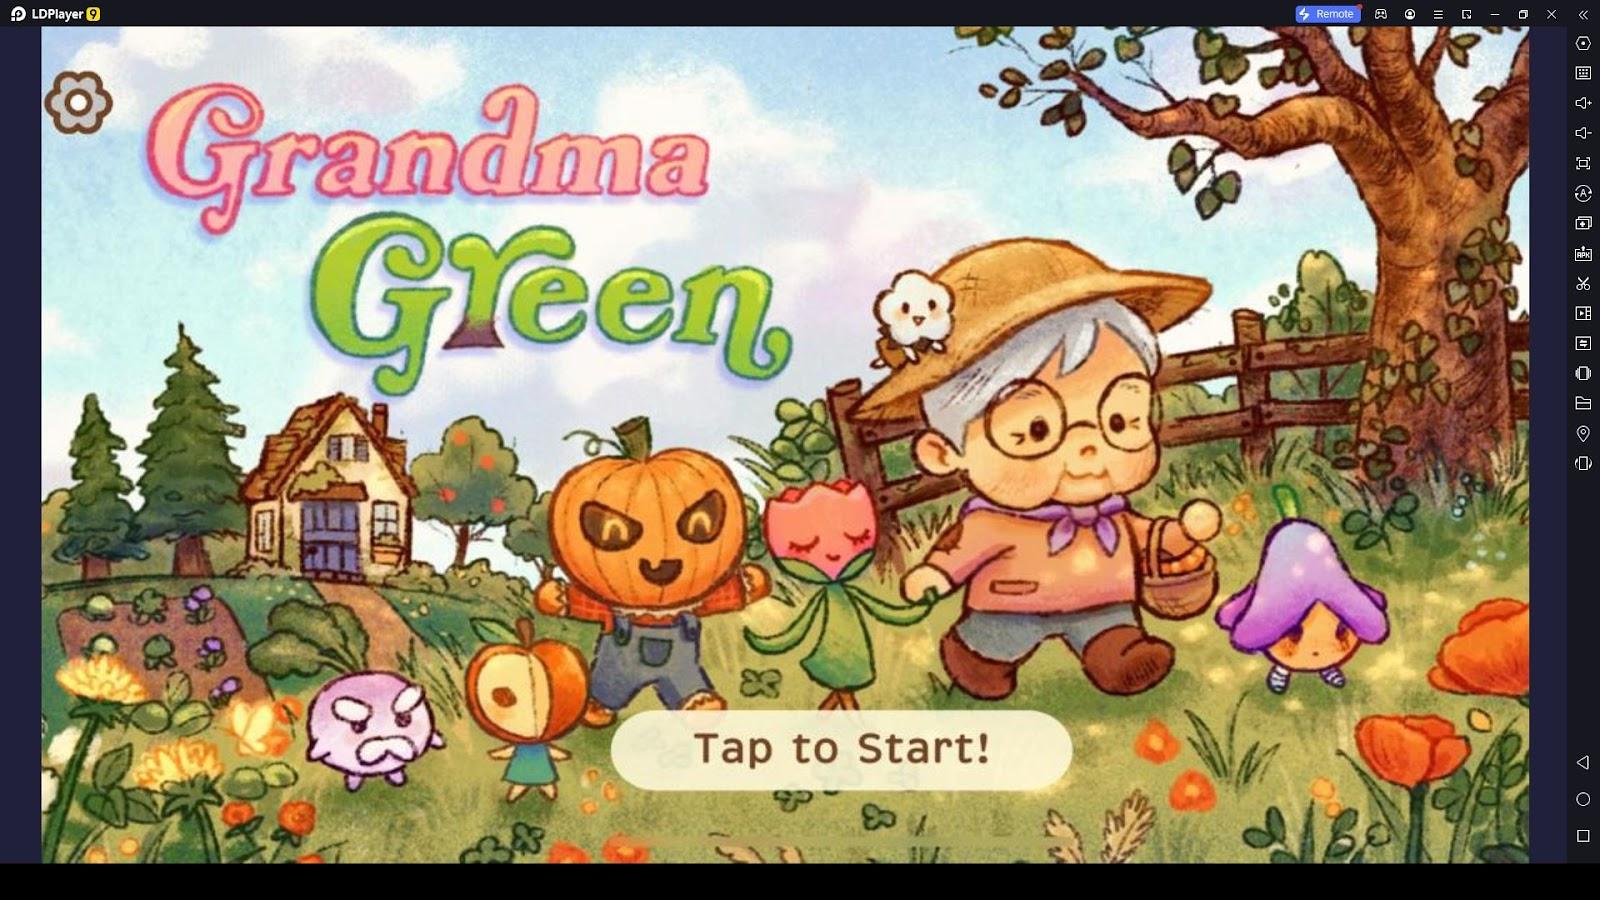 Grandma Green Ultimate Guide